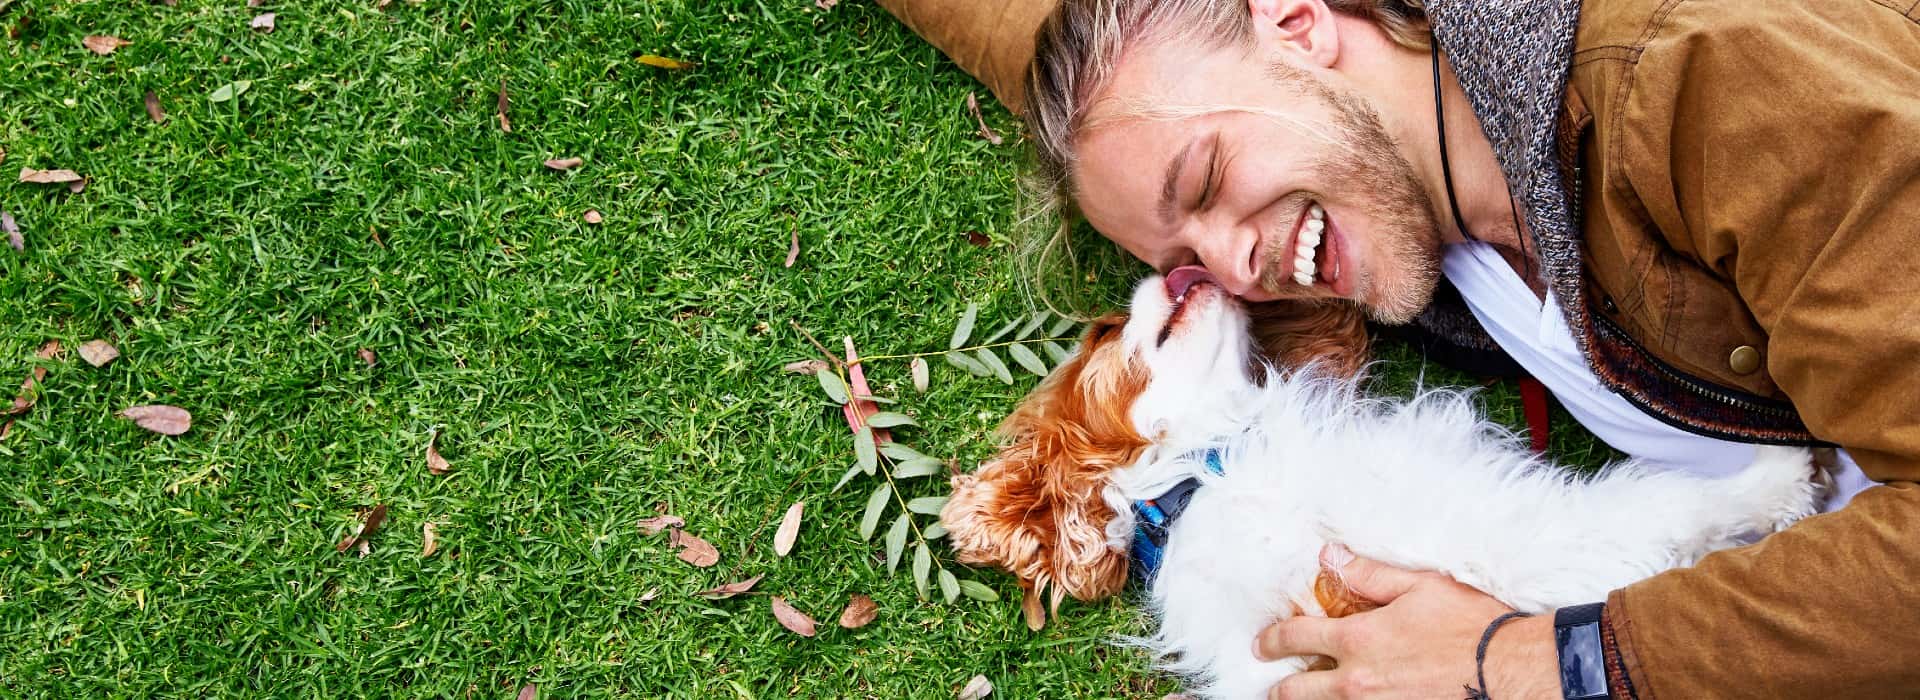 一个男人躺在草地上，带着一只棕白色的小狗. 狗在舔男人的脸，男人在笑.